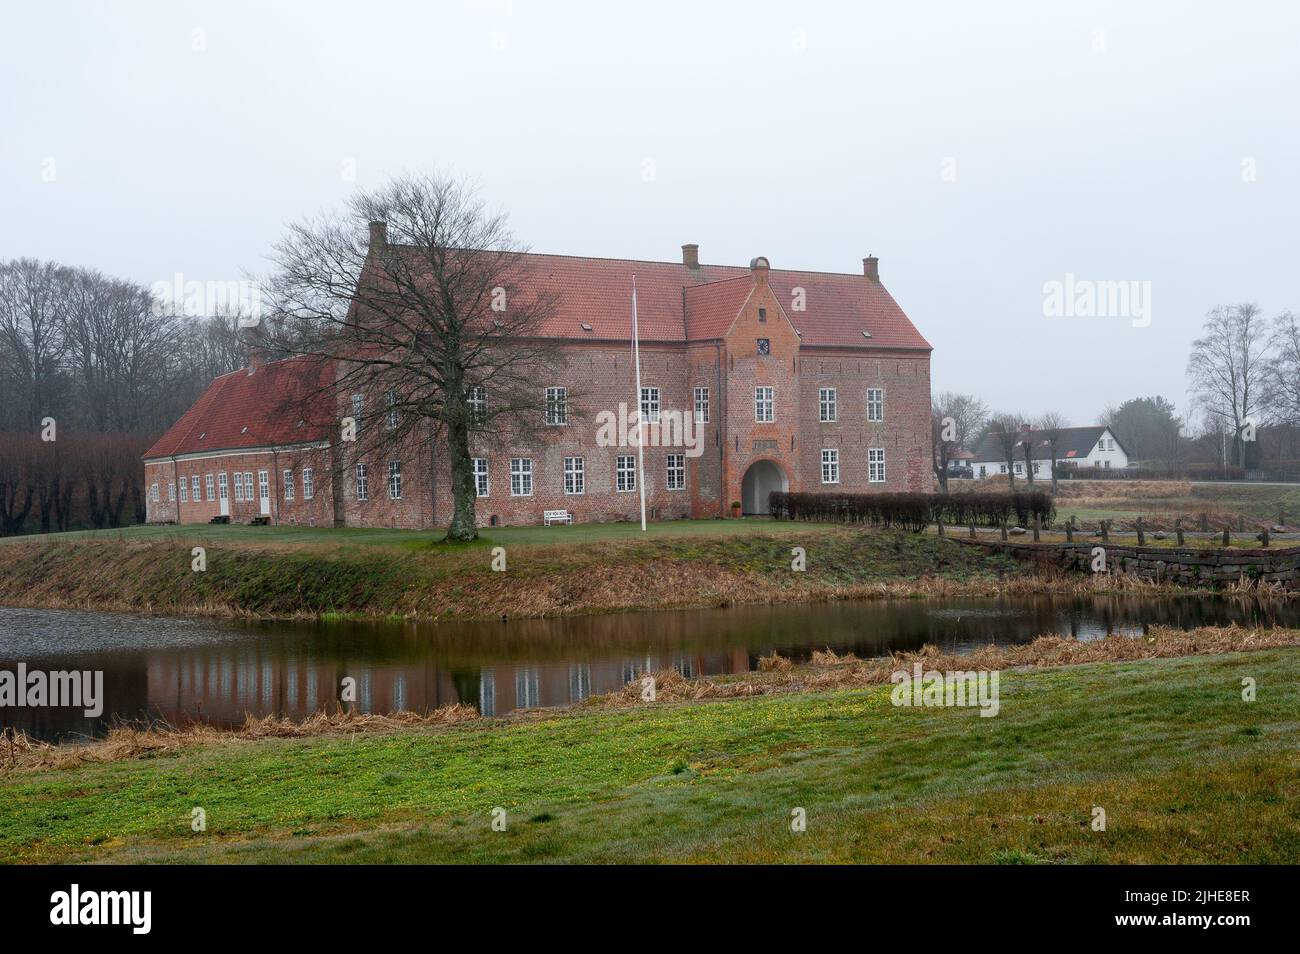 Sæbygaard Manor, municipio de Frederikshavn, región Nordjylland, península de Jutlandia en el norte de Dinamarca Foto de stock